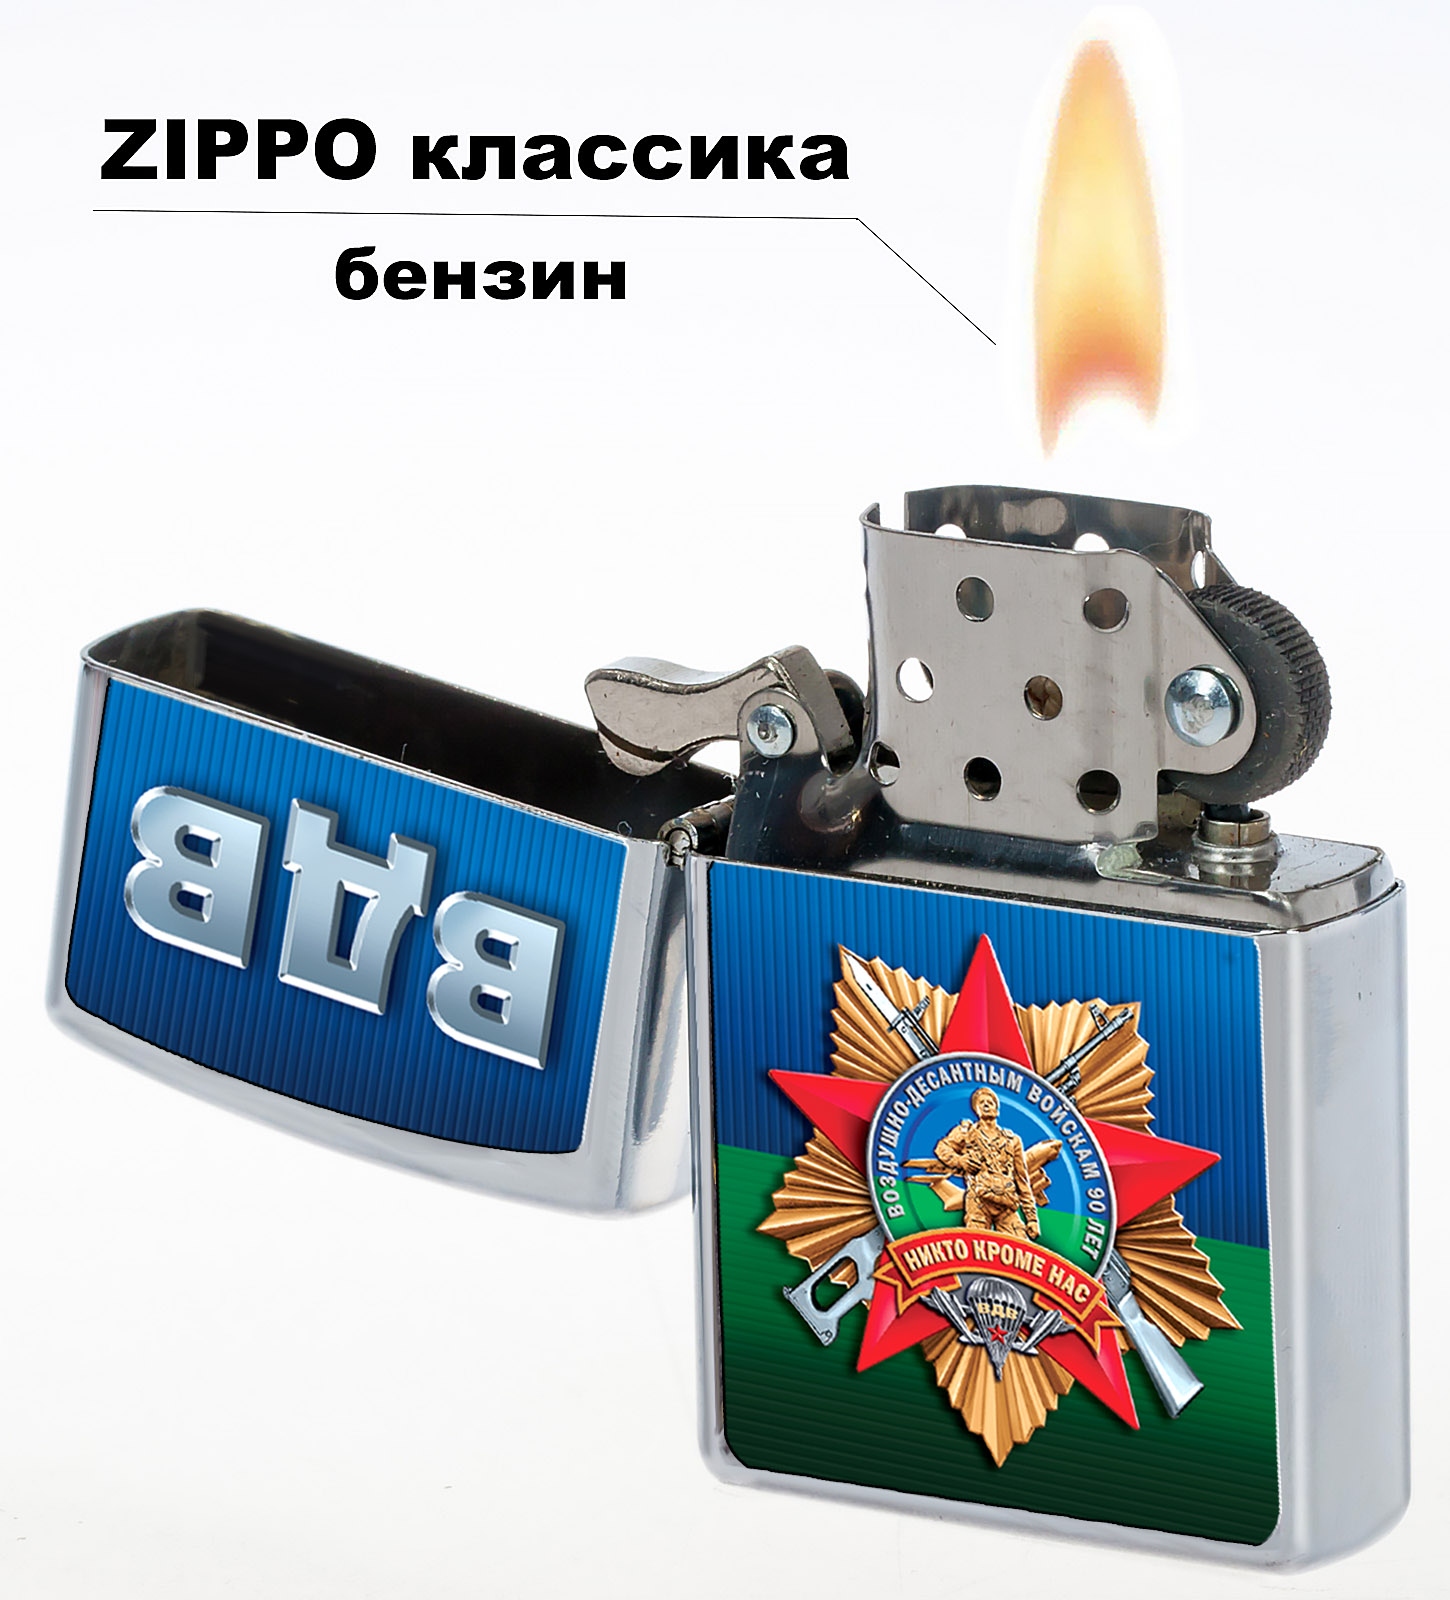 Зажигалка Zippo бензиновая "Воздушно-десантные войска" 